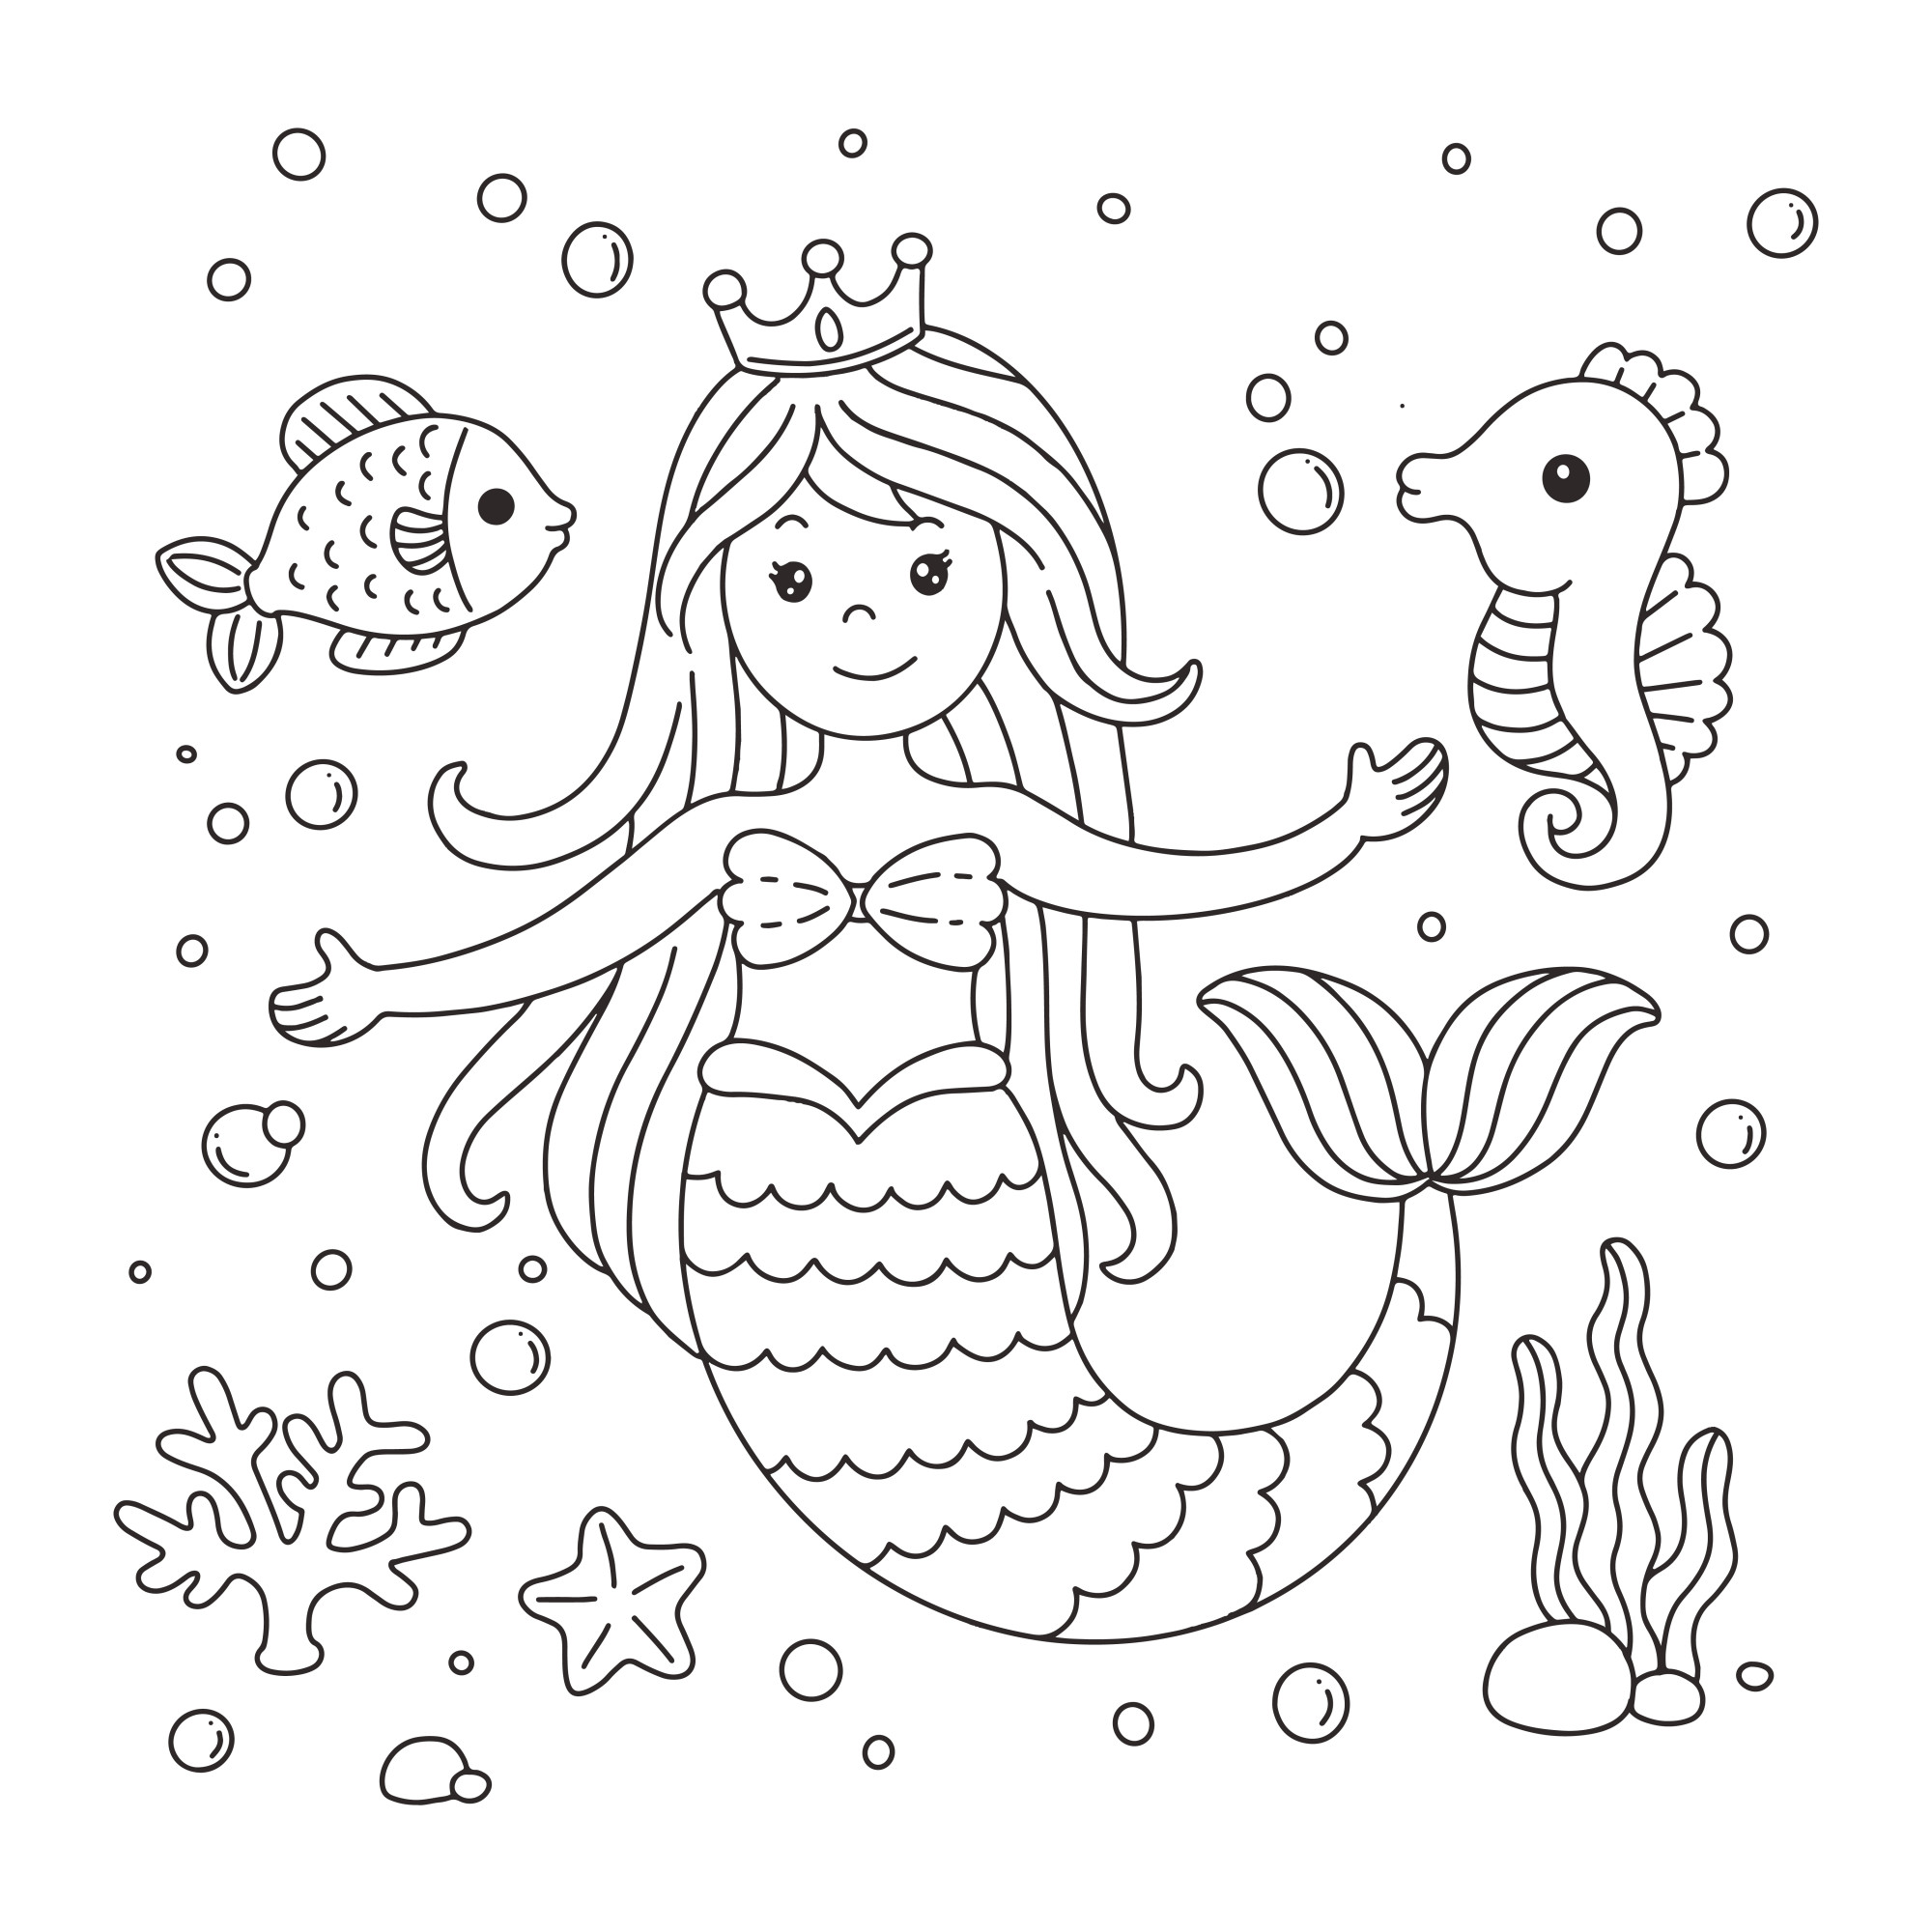 Раскраска для детей: русалочка с рыбками и морскими коньками